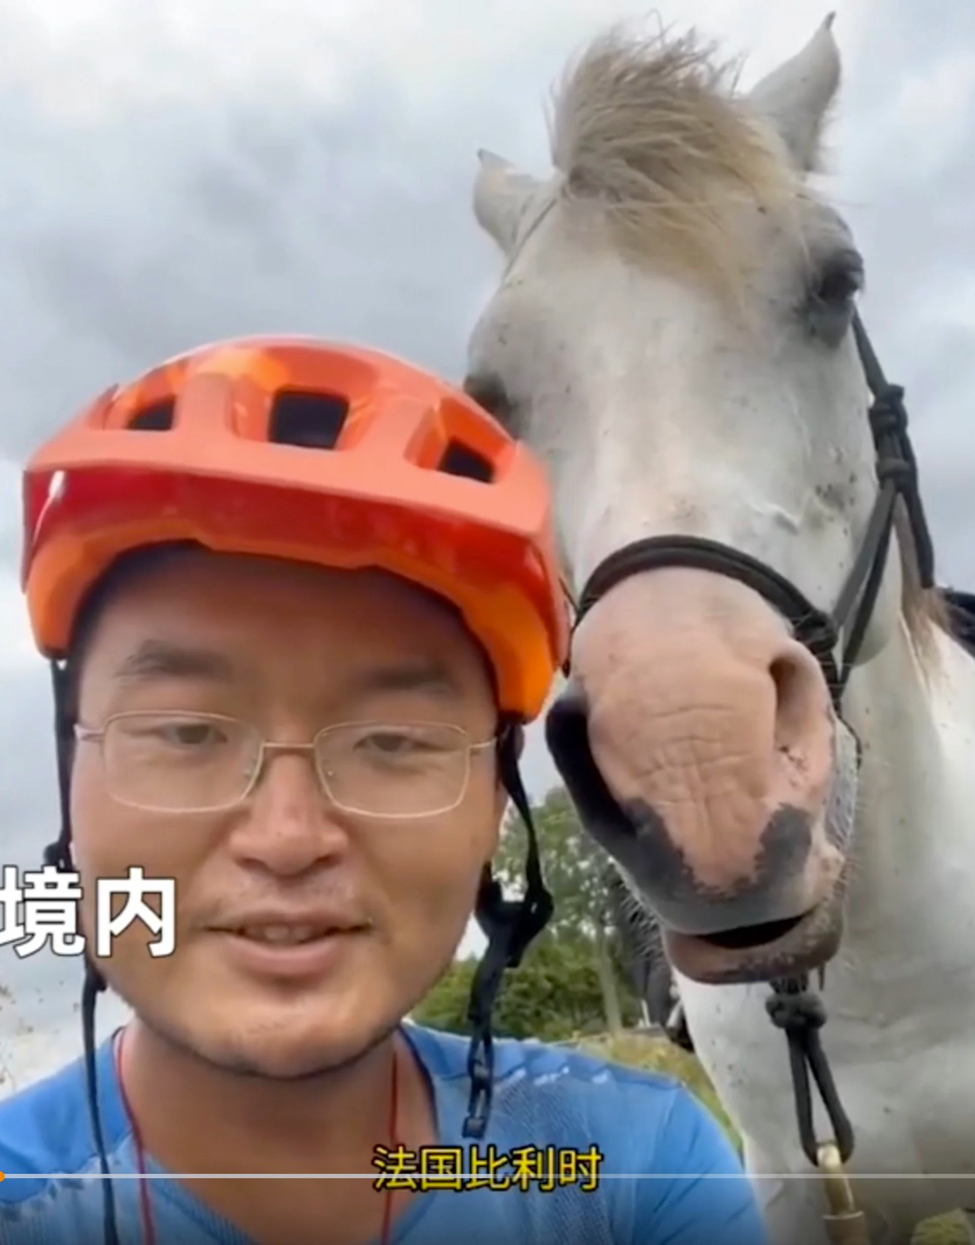 Tranh cãi cưỡi ngựa từ châu Âu về Trung Quốc bị tố ngược đãi động vật - Ảnh 3.